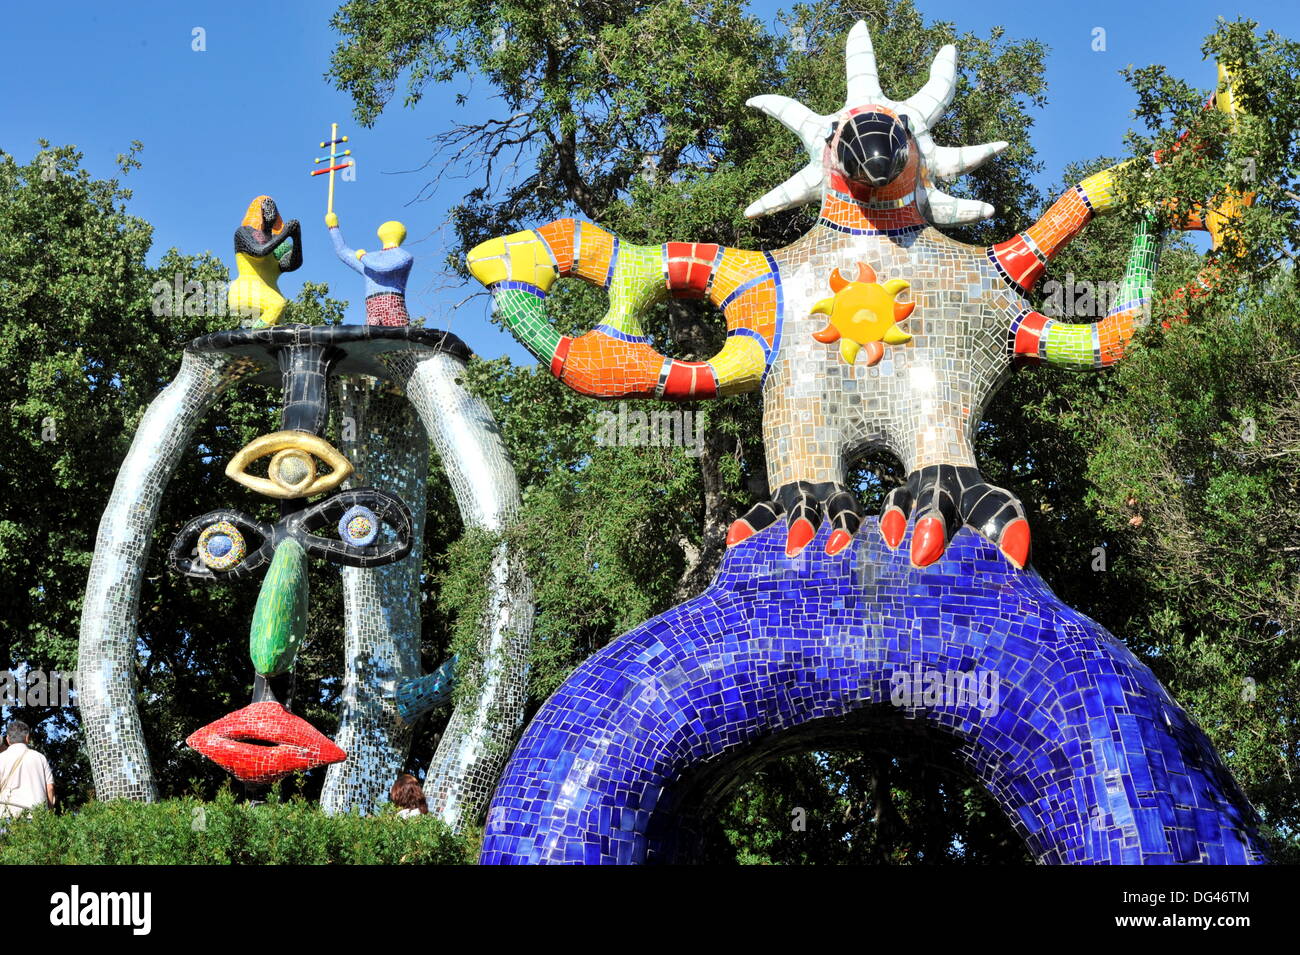 Sculptures de l'artiste français Niki de Saint Phalle dans le Tarot de  jardin près de Capalbio dans Tuskany Italie le Septemberg 16. L'année 2013.  Gauche : 'Le Hiérophante". Droite : 'Le Soleil'